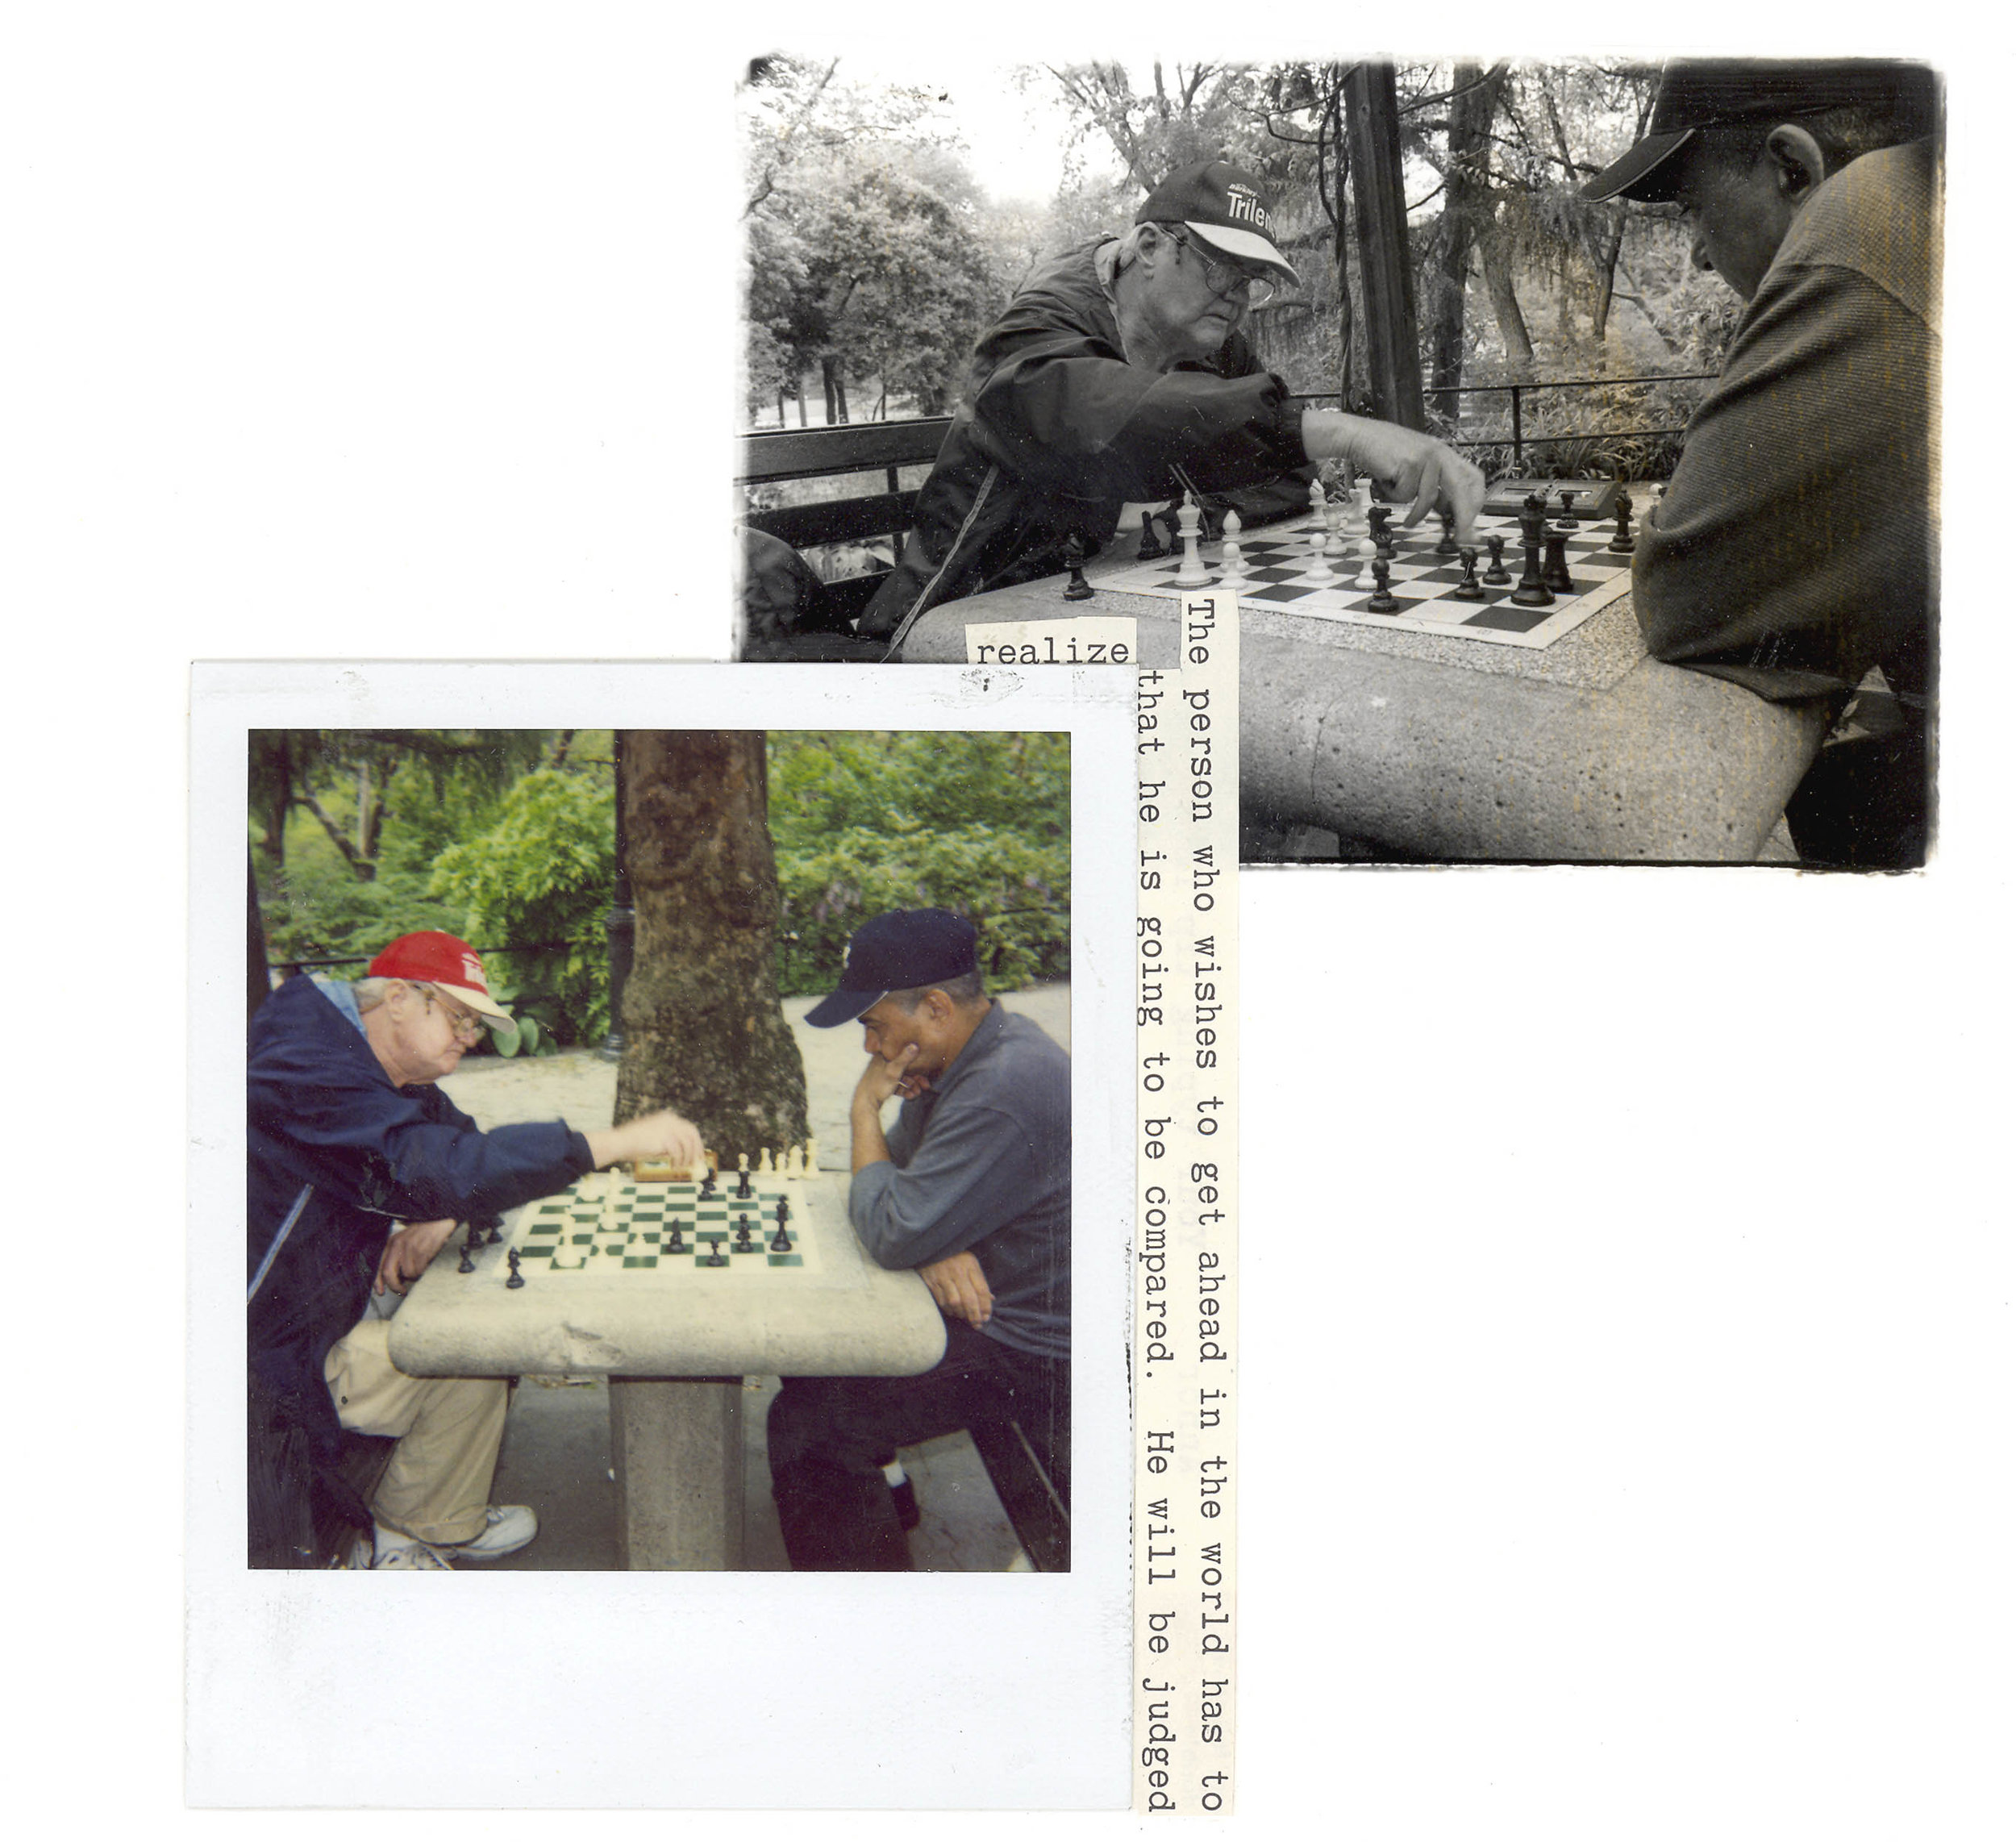 shane_deruise_alleyways_chess.jpg